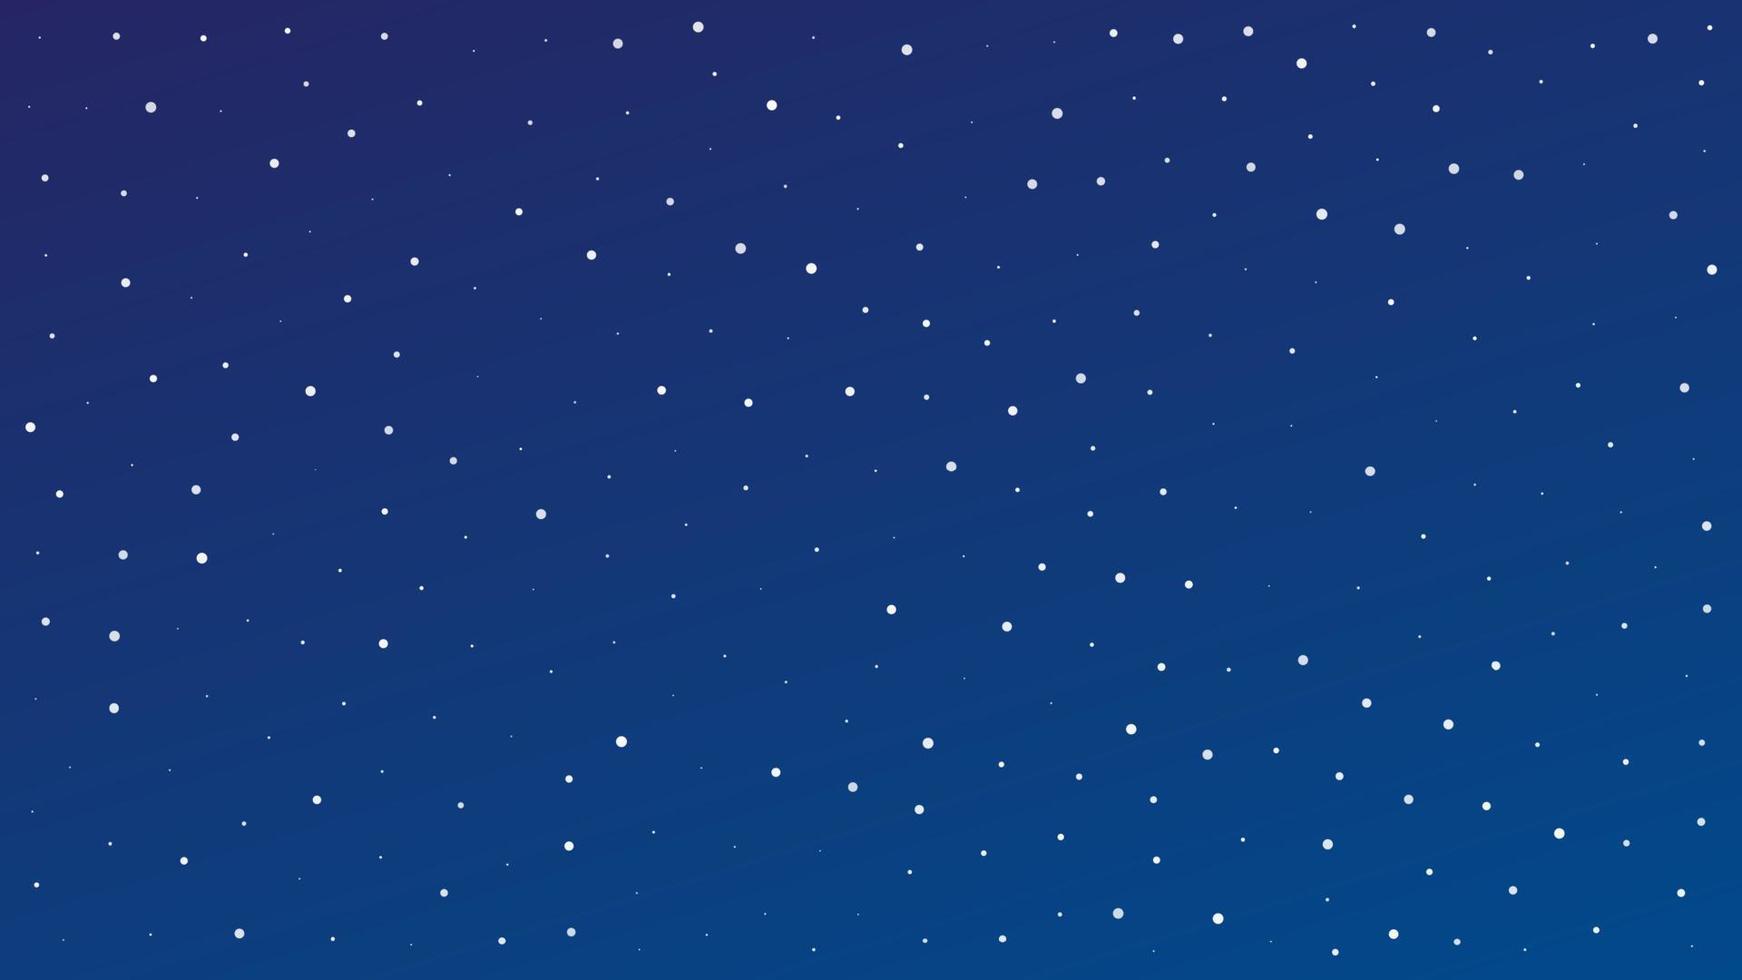 cielo nocturno con muchas estrellas. fondo de naturaleza abstracta con polvo de estrellas en el universo profundo. ilustración vectorial vector